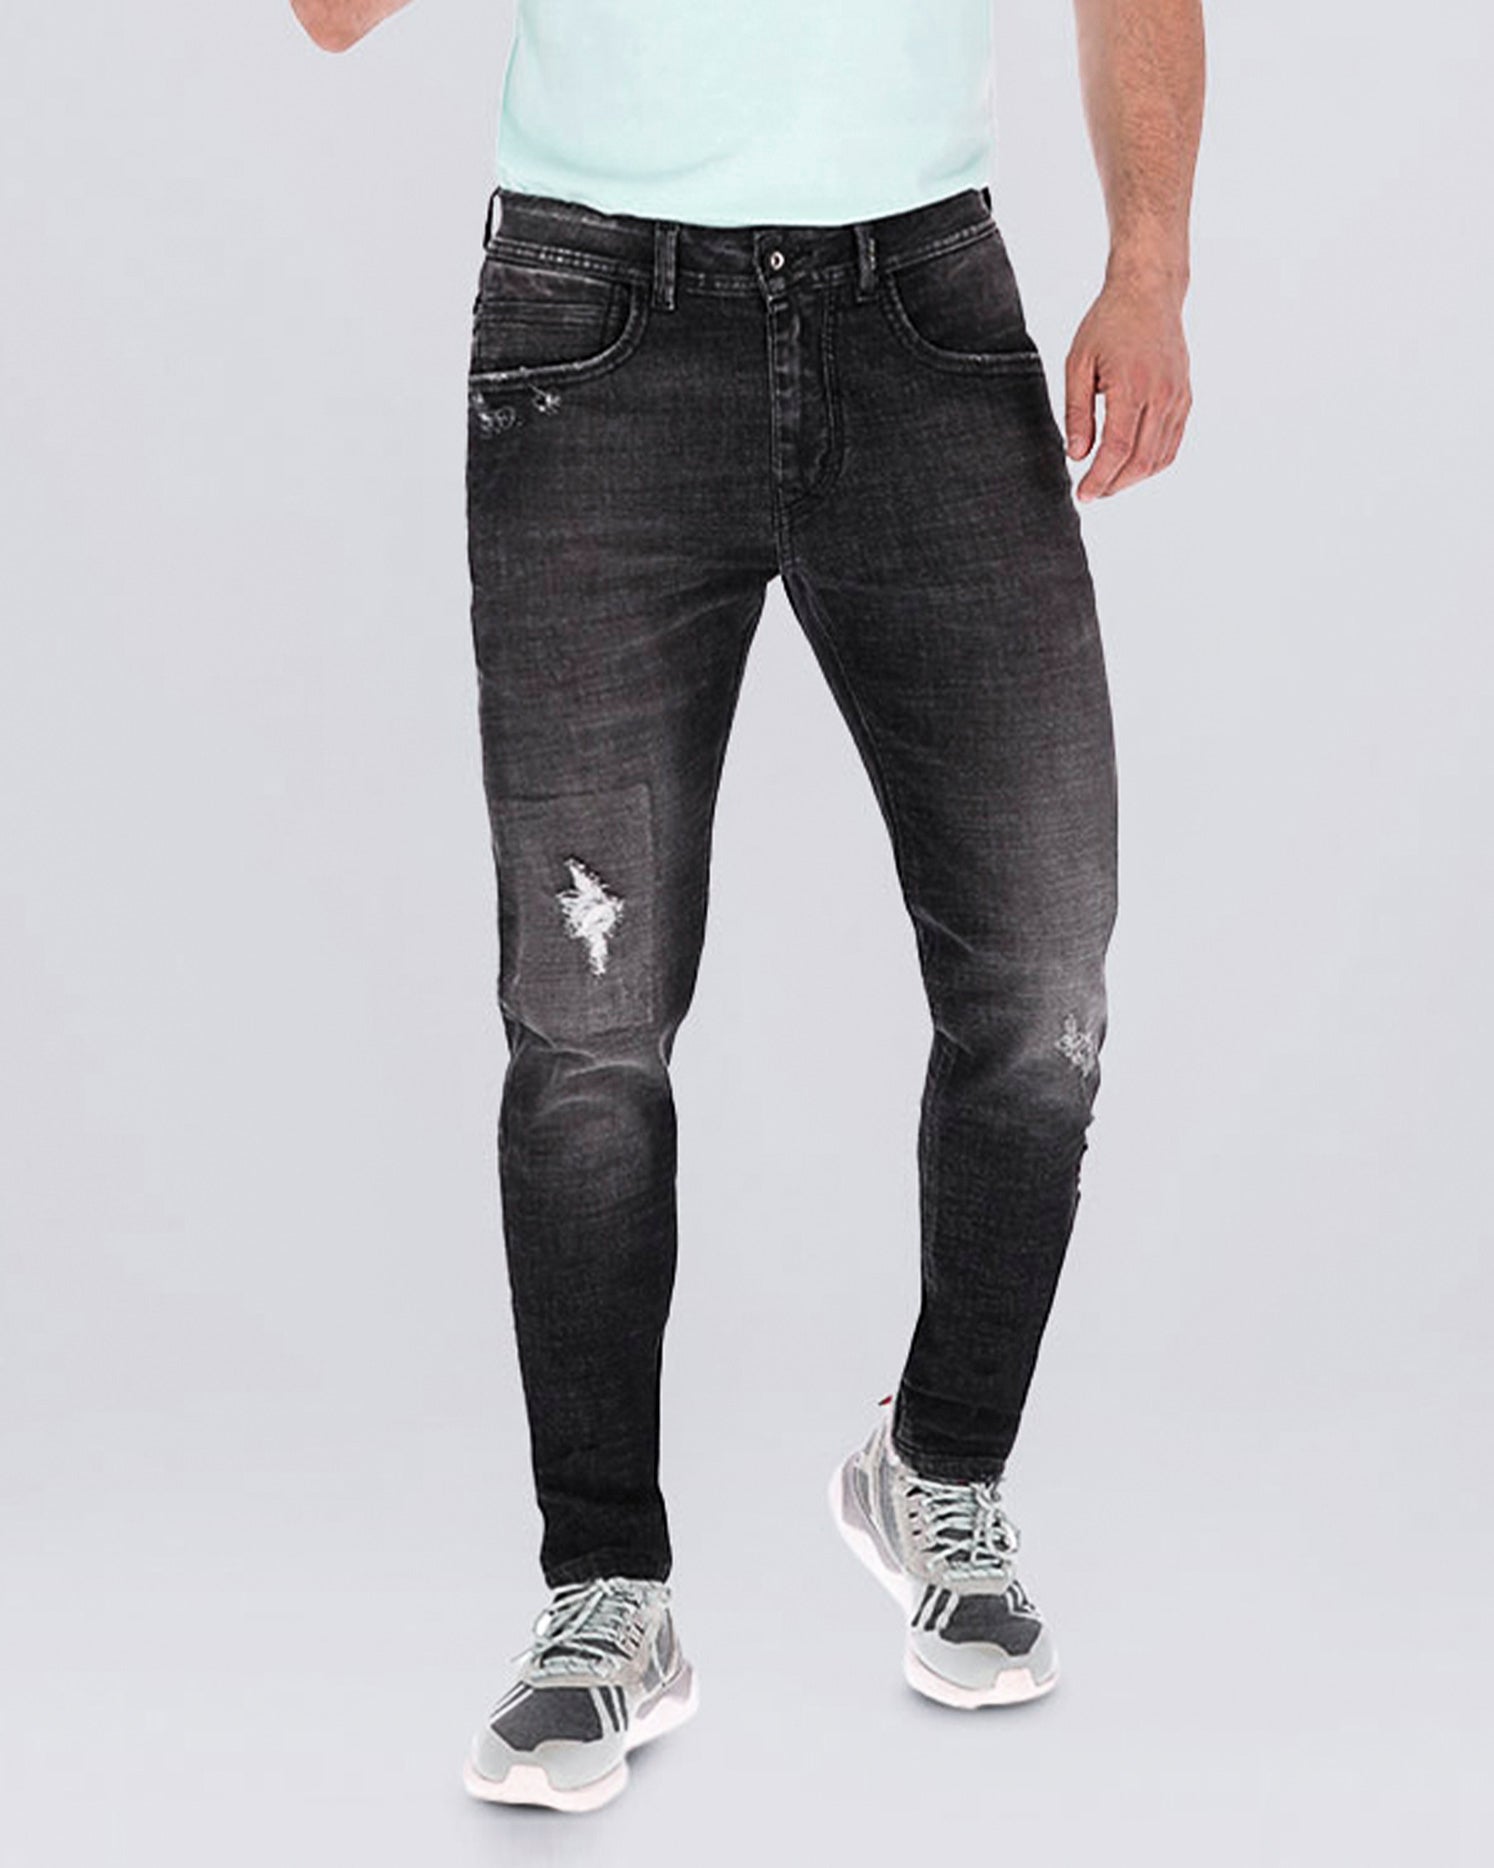 Jean skinny color gris oscuro, bolsillos laterales y posteriores funcionales, poco desgates. Una prenda confeccionada en Algodón, Poliéster, Rayón y Elastano